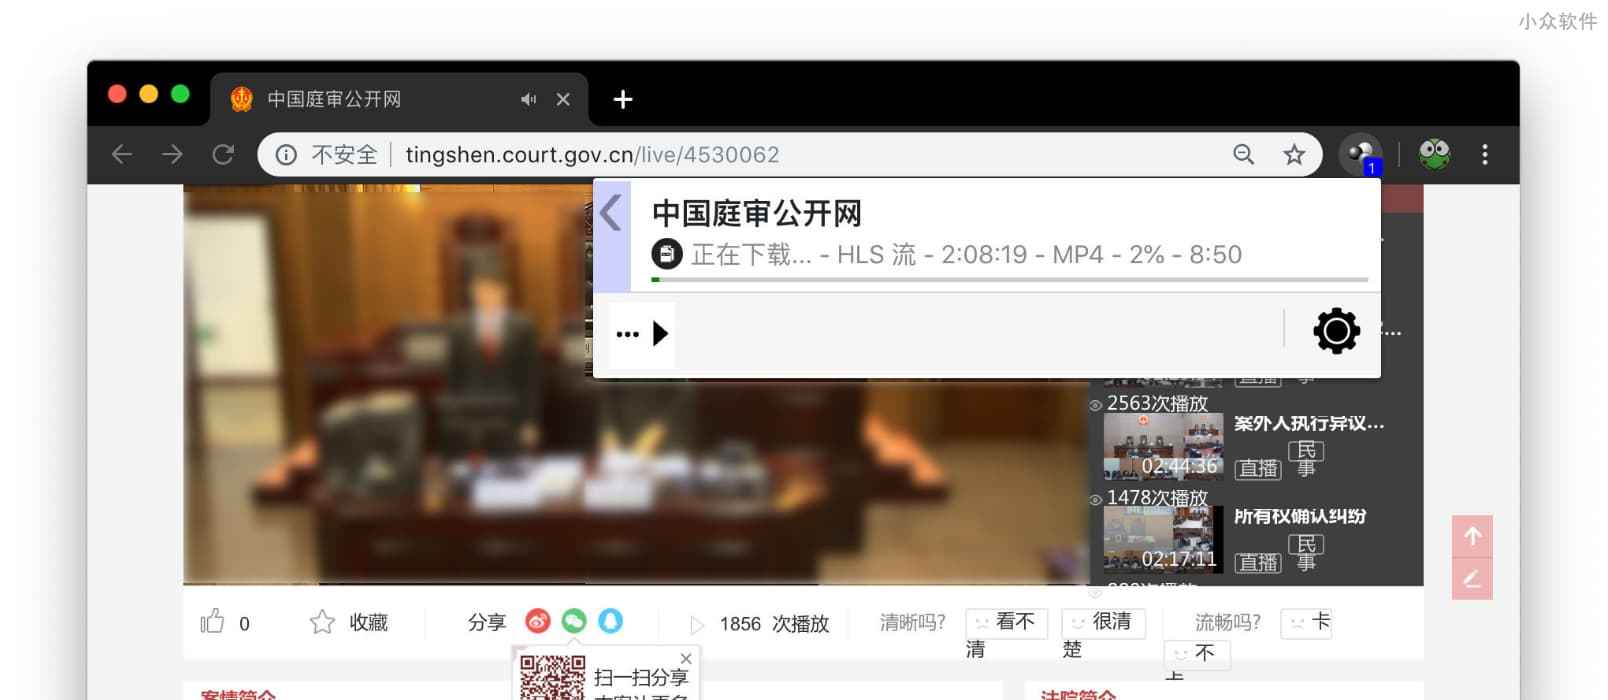 如何下载《中国庭审网》等 flv 格式的在线视频？